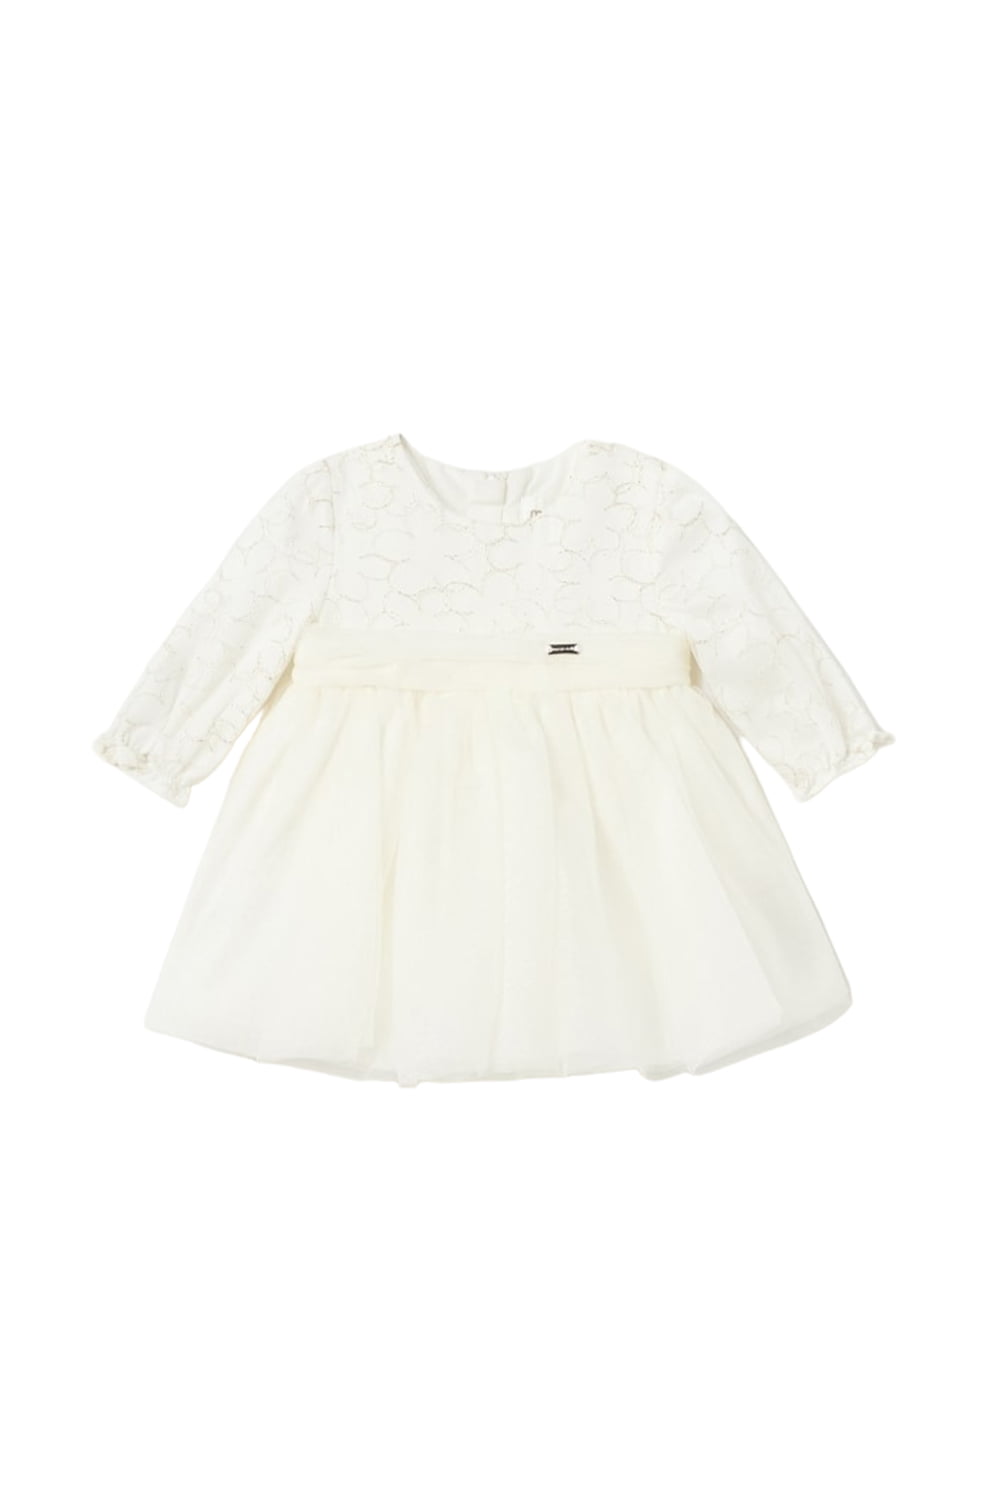 Παιδικό Φόρεμα Για Κορίτσι MAYORAL 13-02855-024 Ασπρο